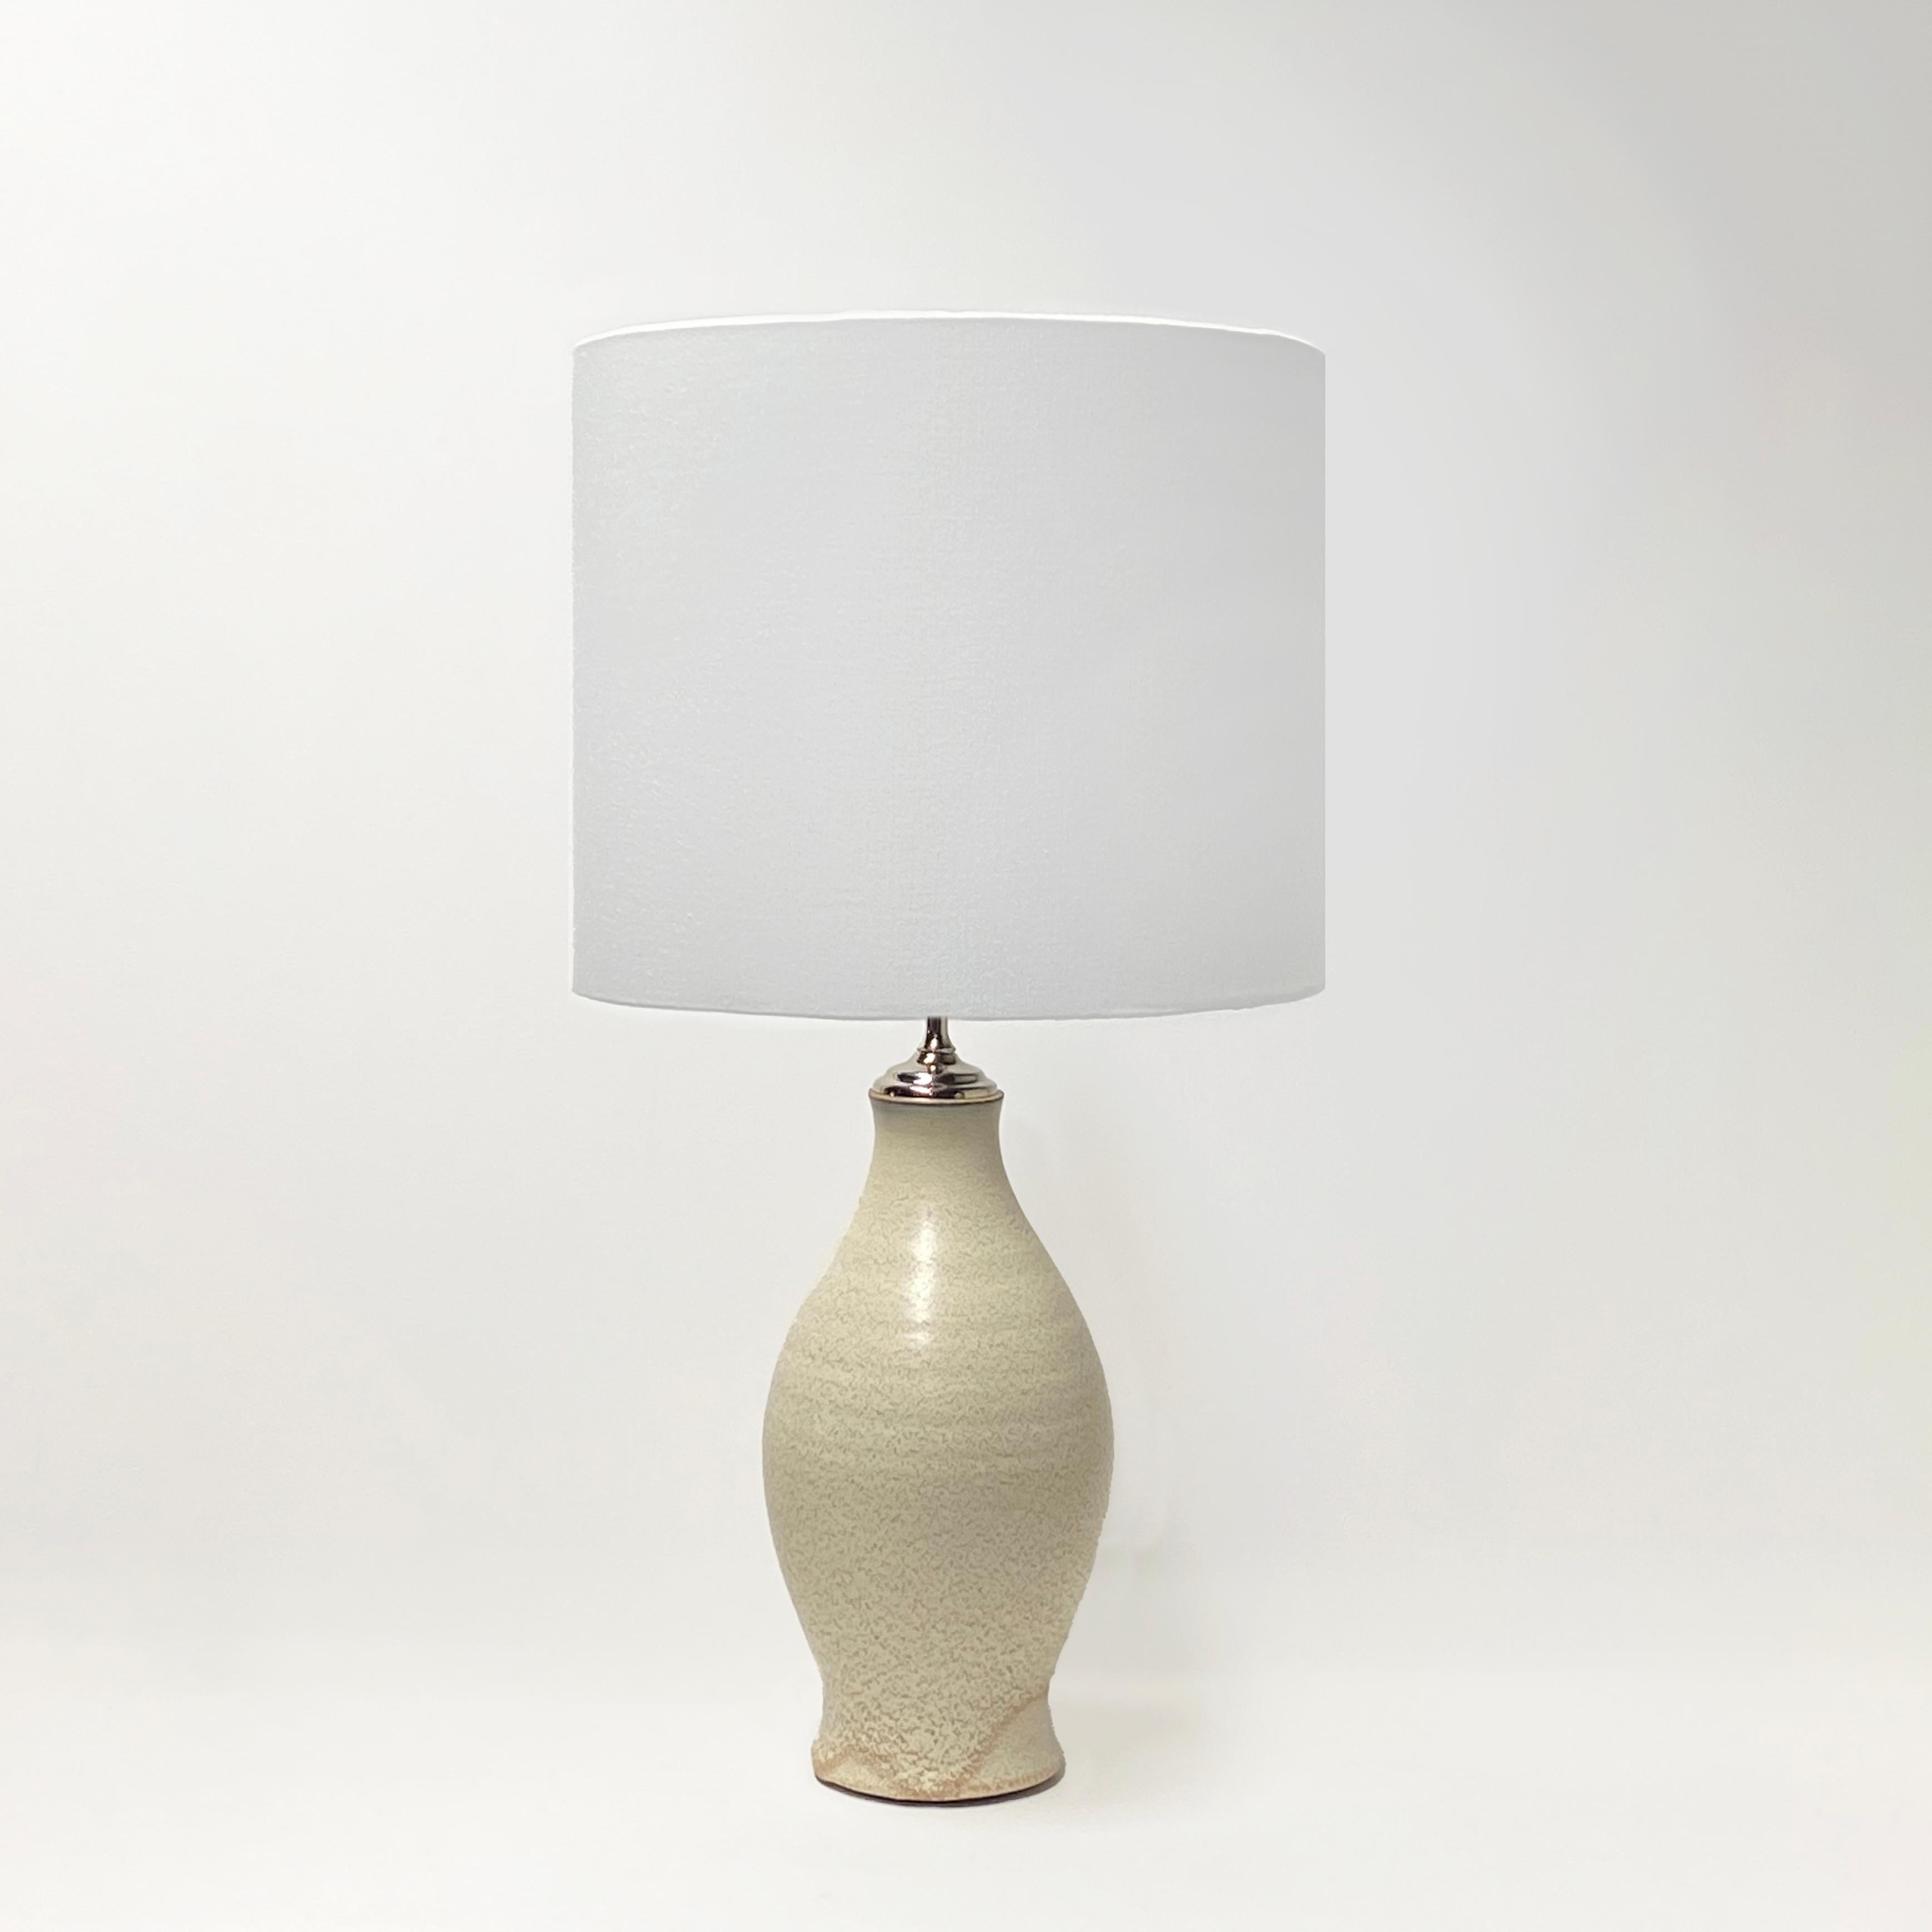 Handgefertigte große, hohe, wheelgedrehte Lampe von Olivia Barry / By Hand - 18